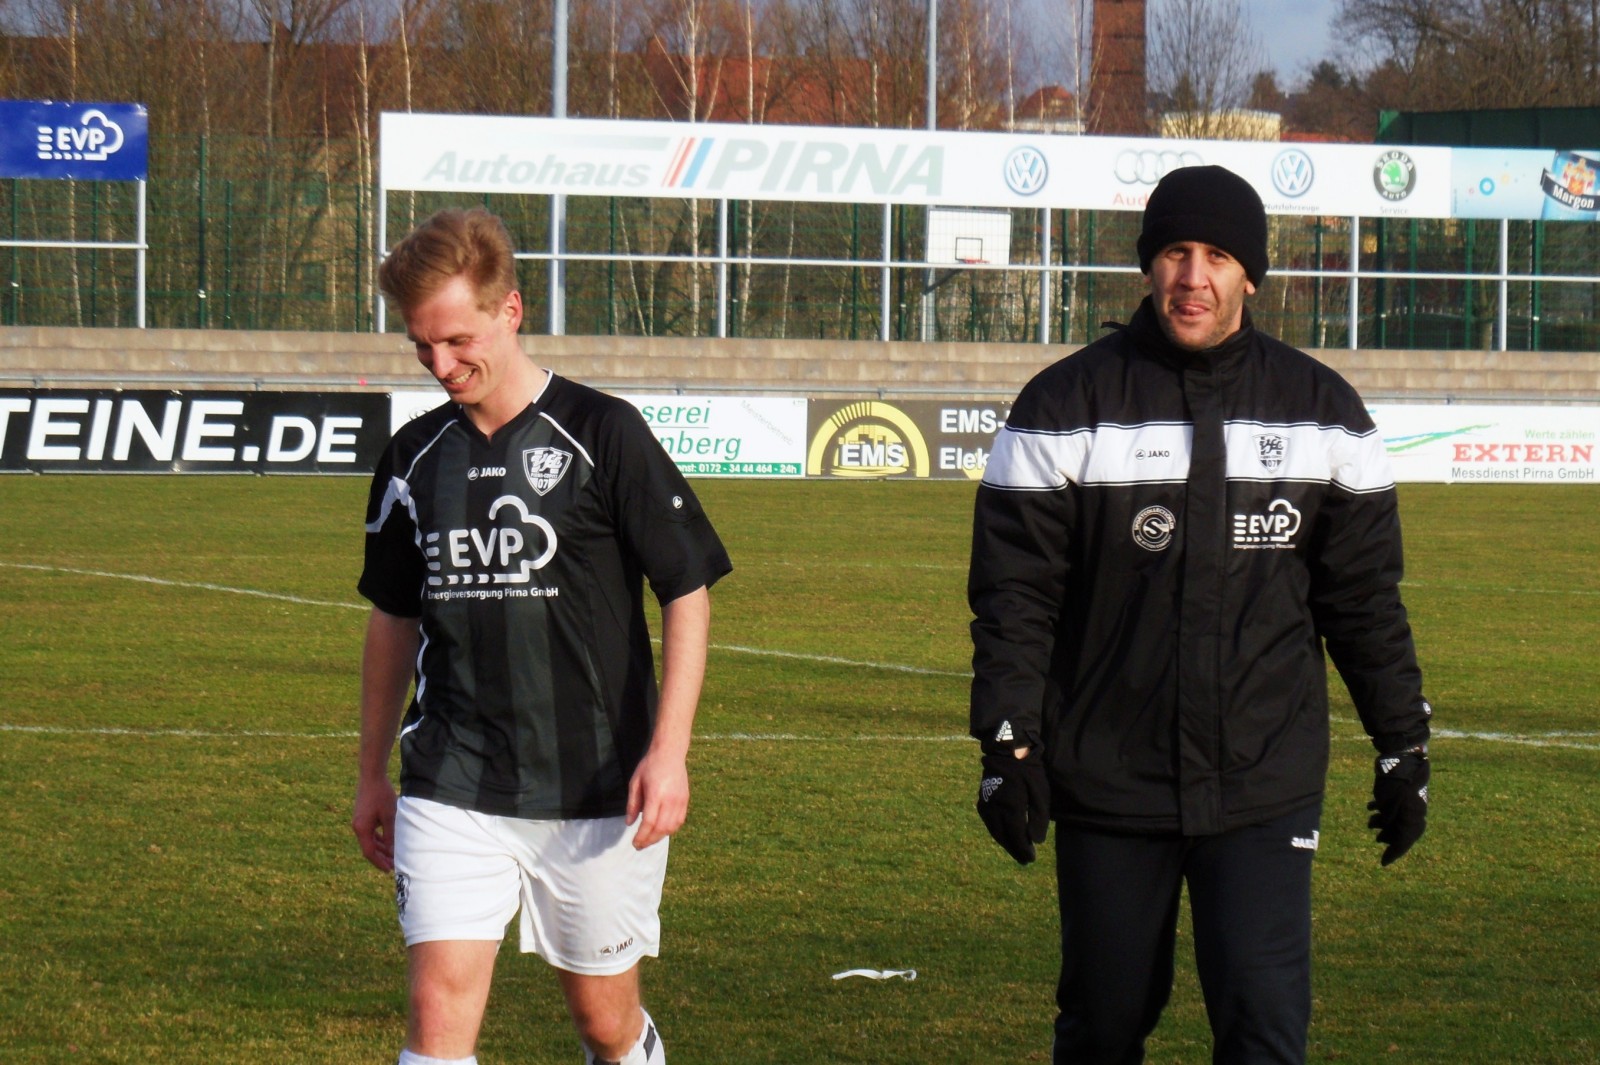 Freuen sich Ã¼ber drei Punkte: Rutger Nagel (li.) und VfL-Coach Elvir Jugo (re.). Foto: VfL/rz